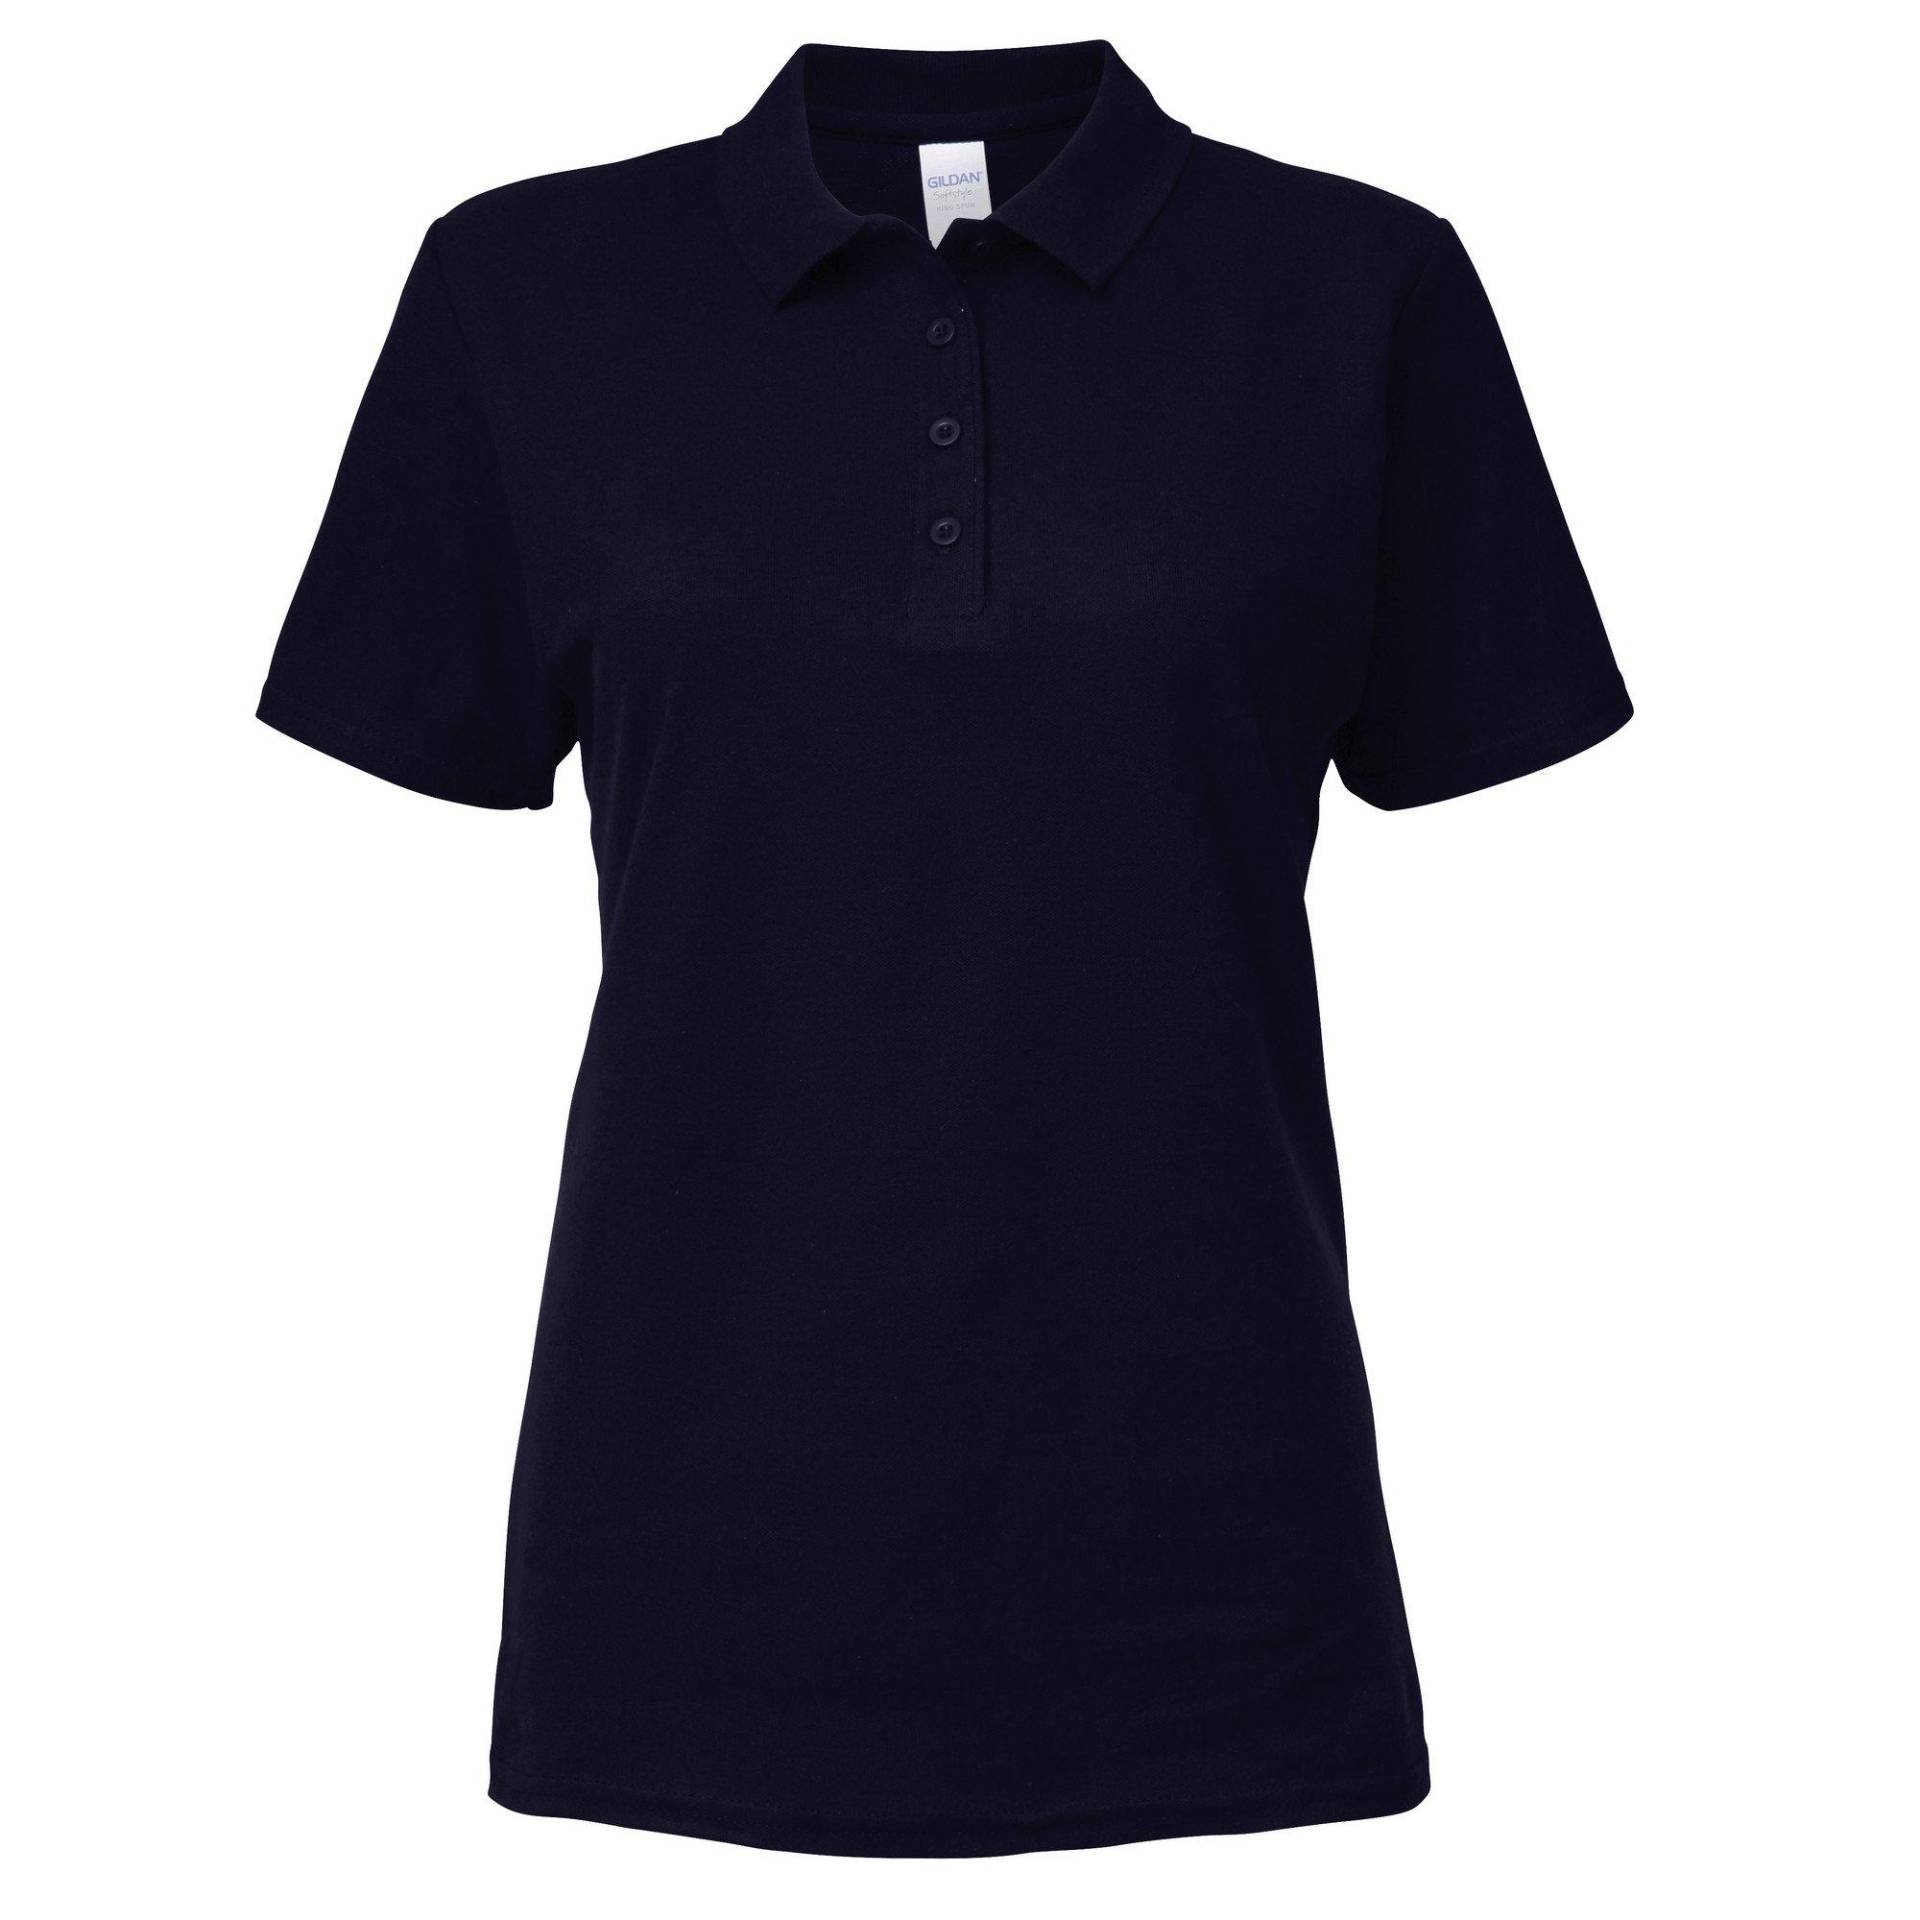 Softstyle Kurzarm Doppel Pique Polo Shirt Damen Marine XL von Gildan